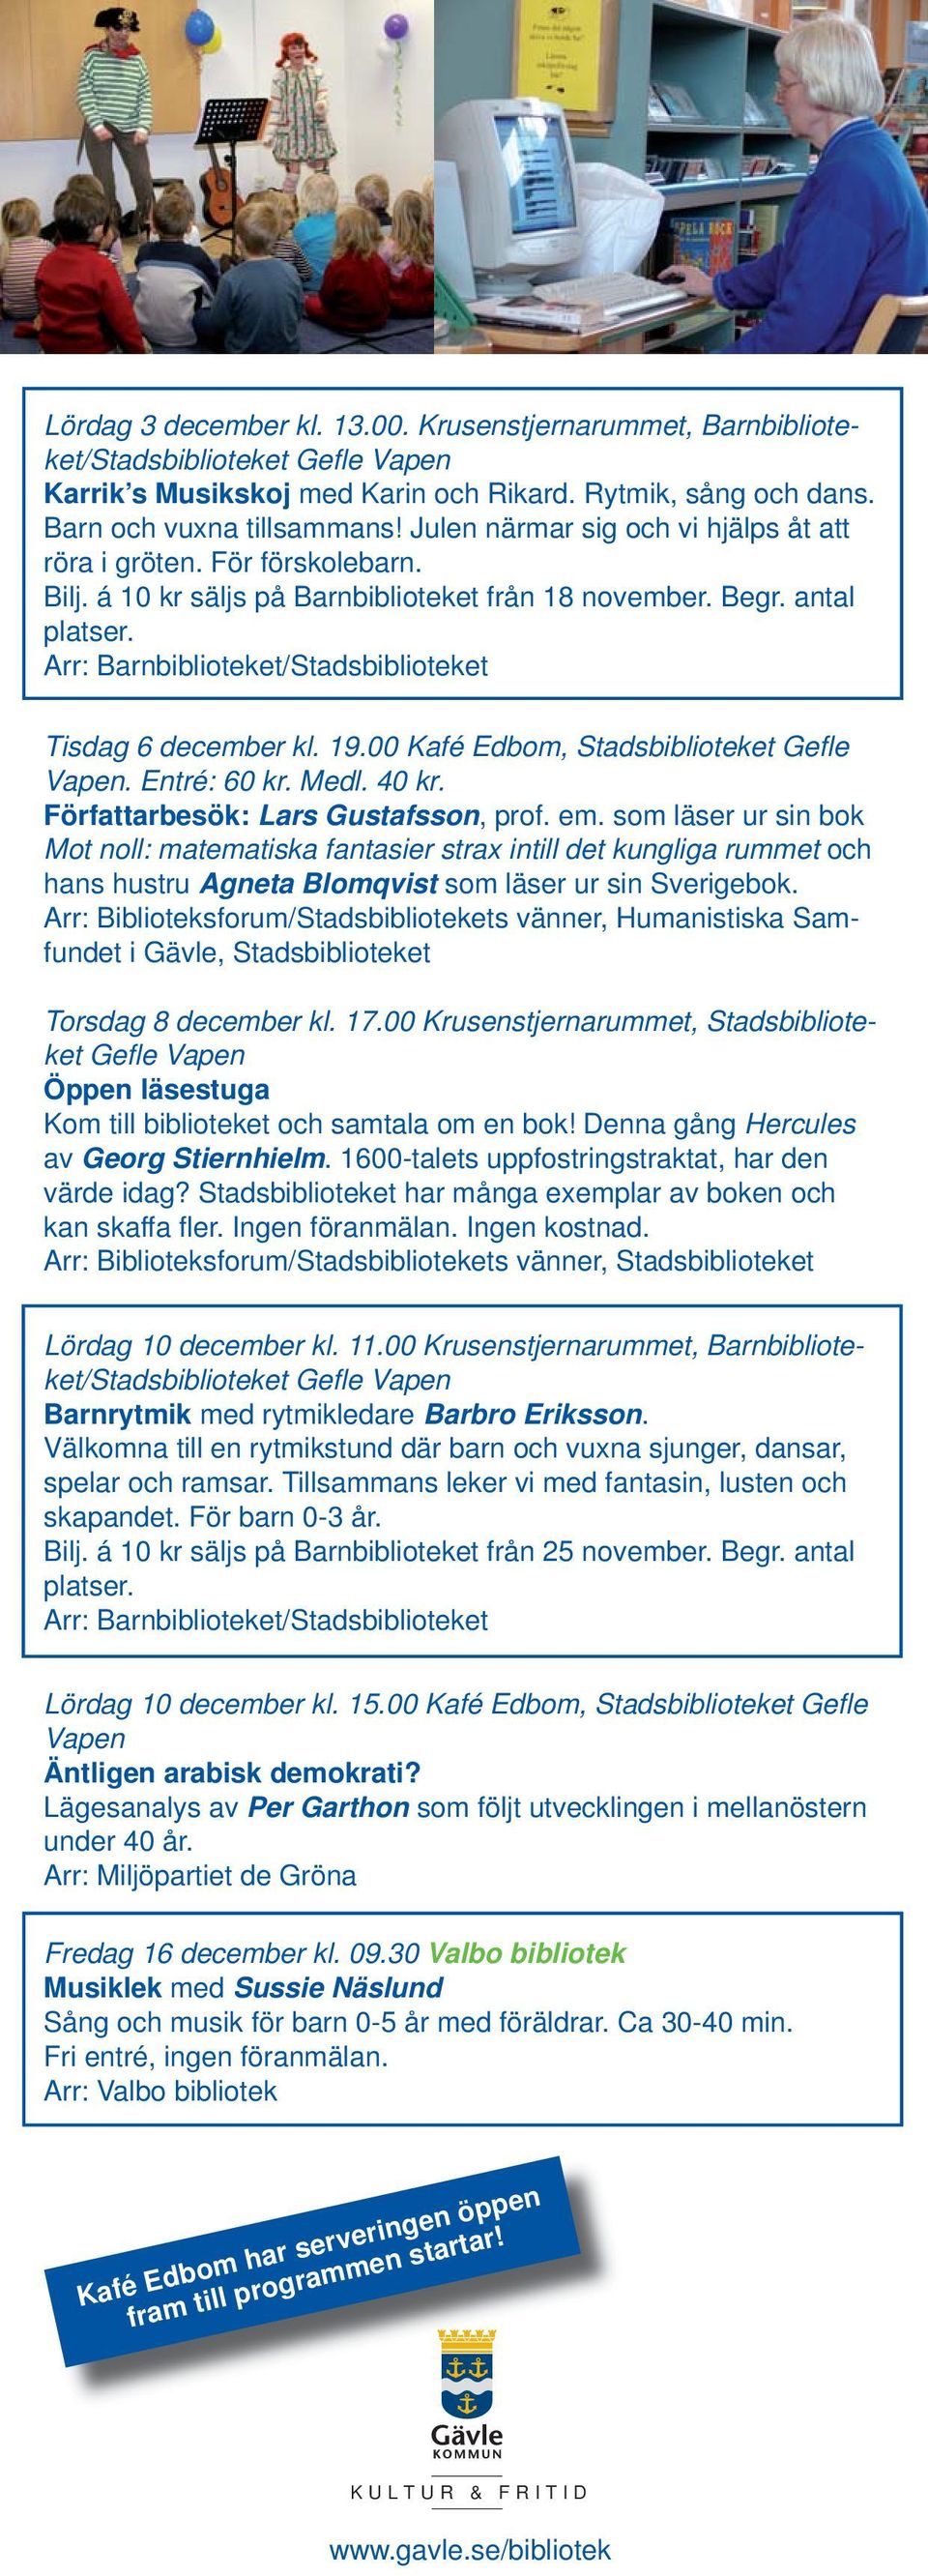 00 Kafé Edbom, Stadsbiblioteket Gefl e. Entré: 60 kr. Medl. 40 kr. Författarbesök: Lars Gustafsson, prof. em.